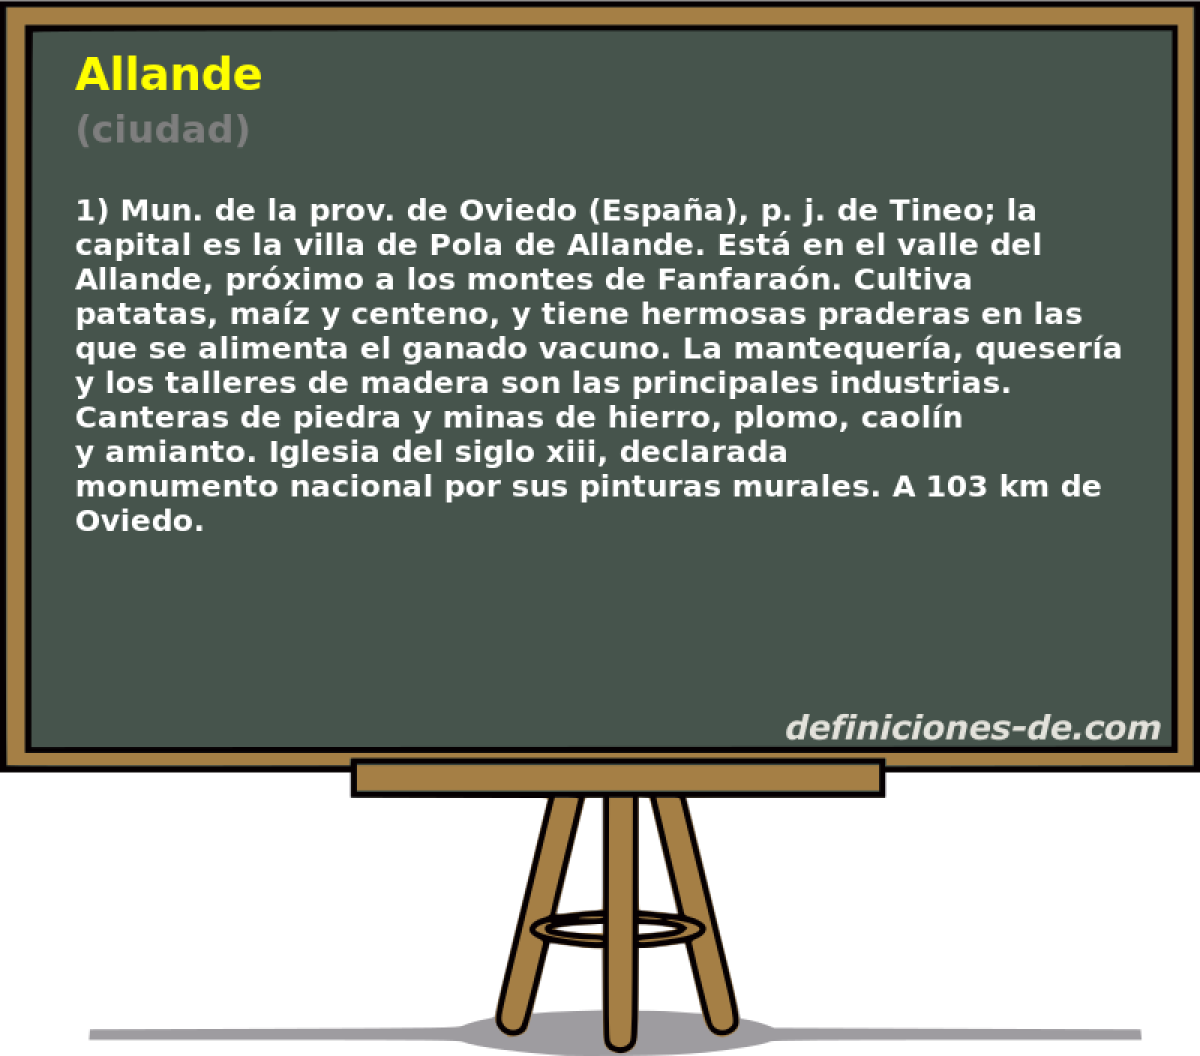 Allande (ciudad)